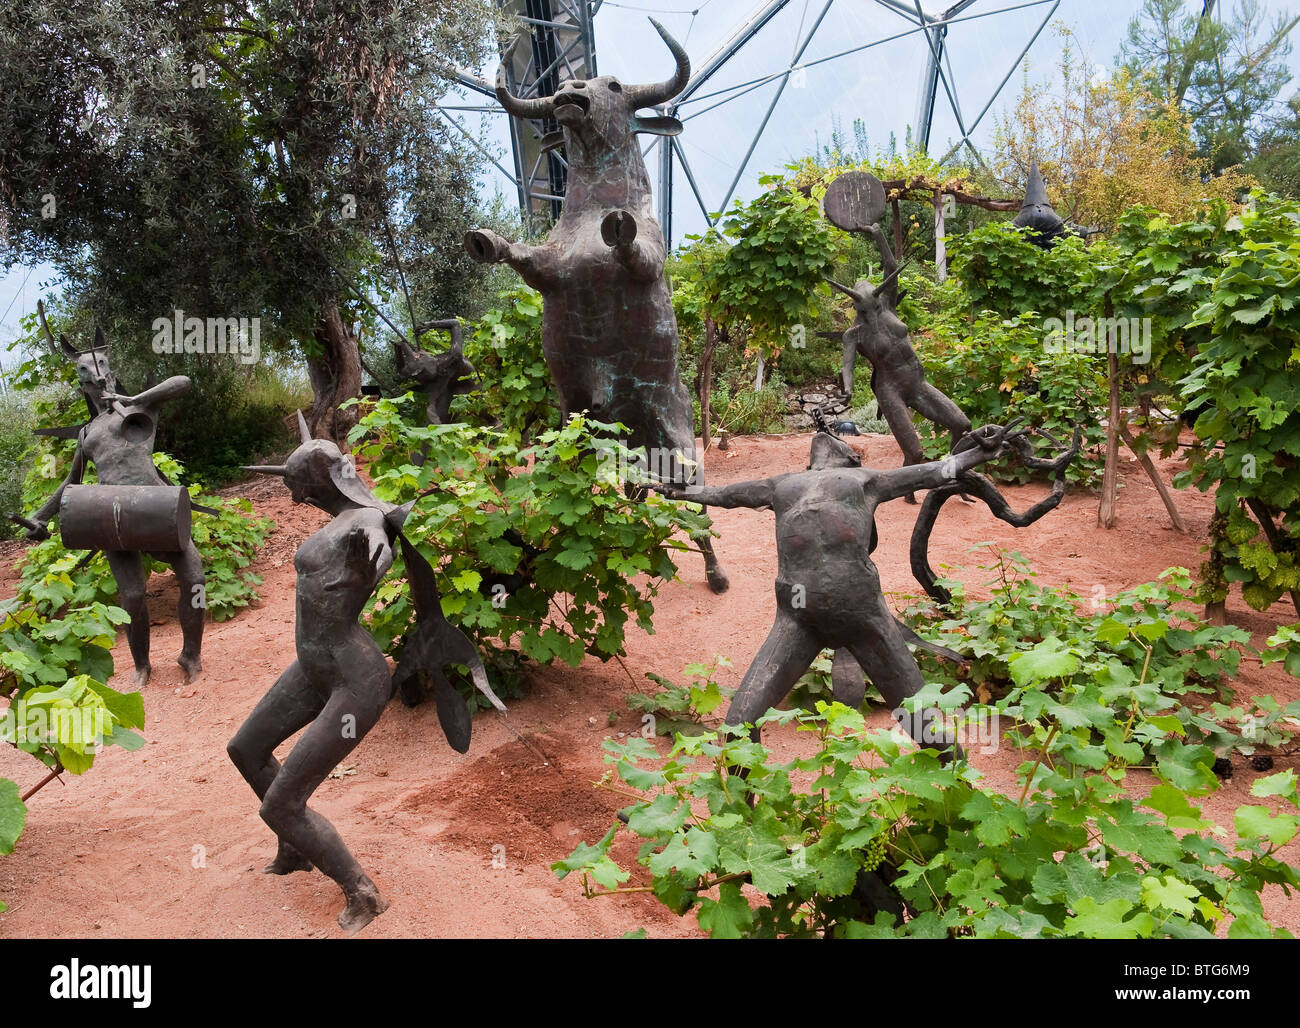 Les rites de Dionysus, une installation artistique de Tim Shaw dans le Biome méditerranéen au projet Eden, Cornwall, Royaume-Uni Banque D'Images